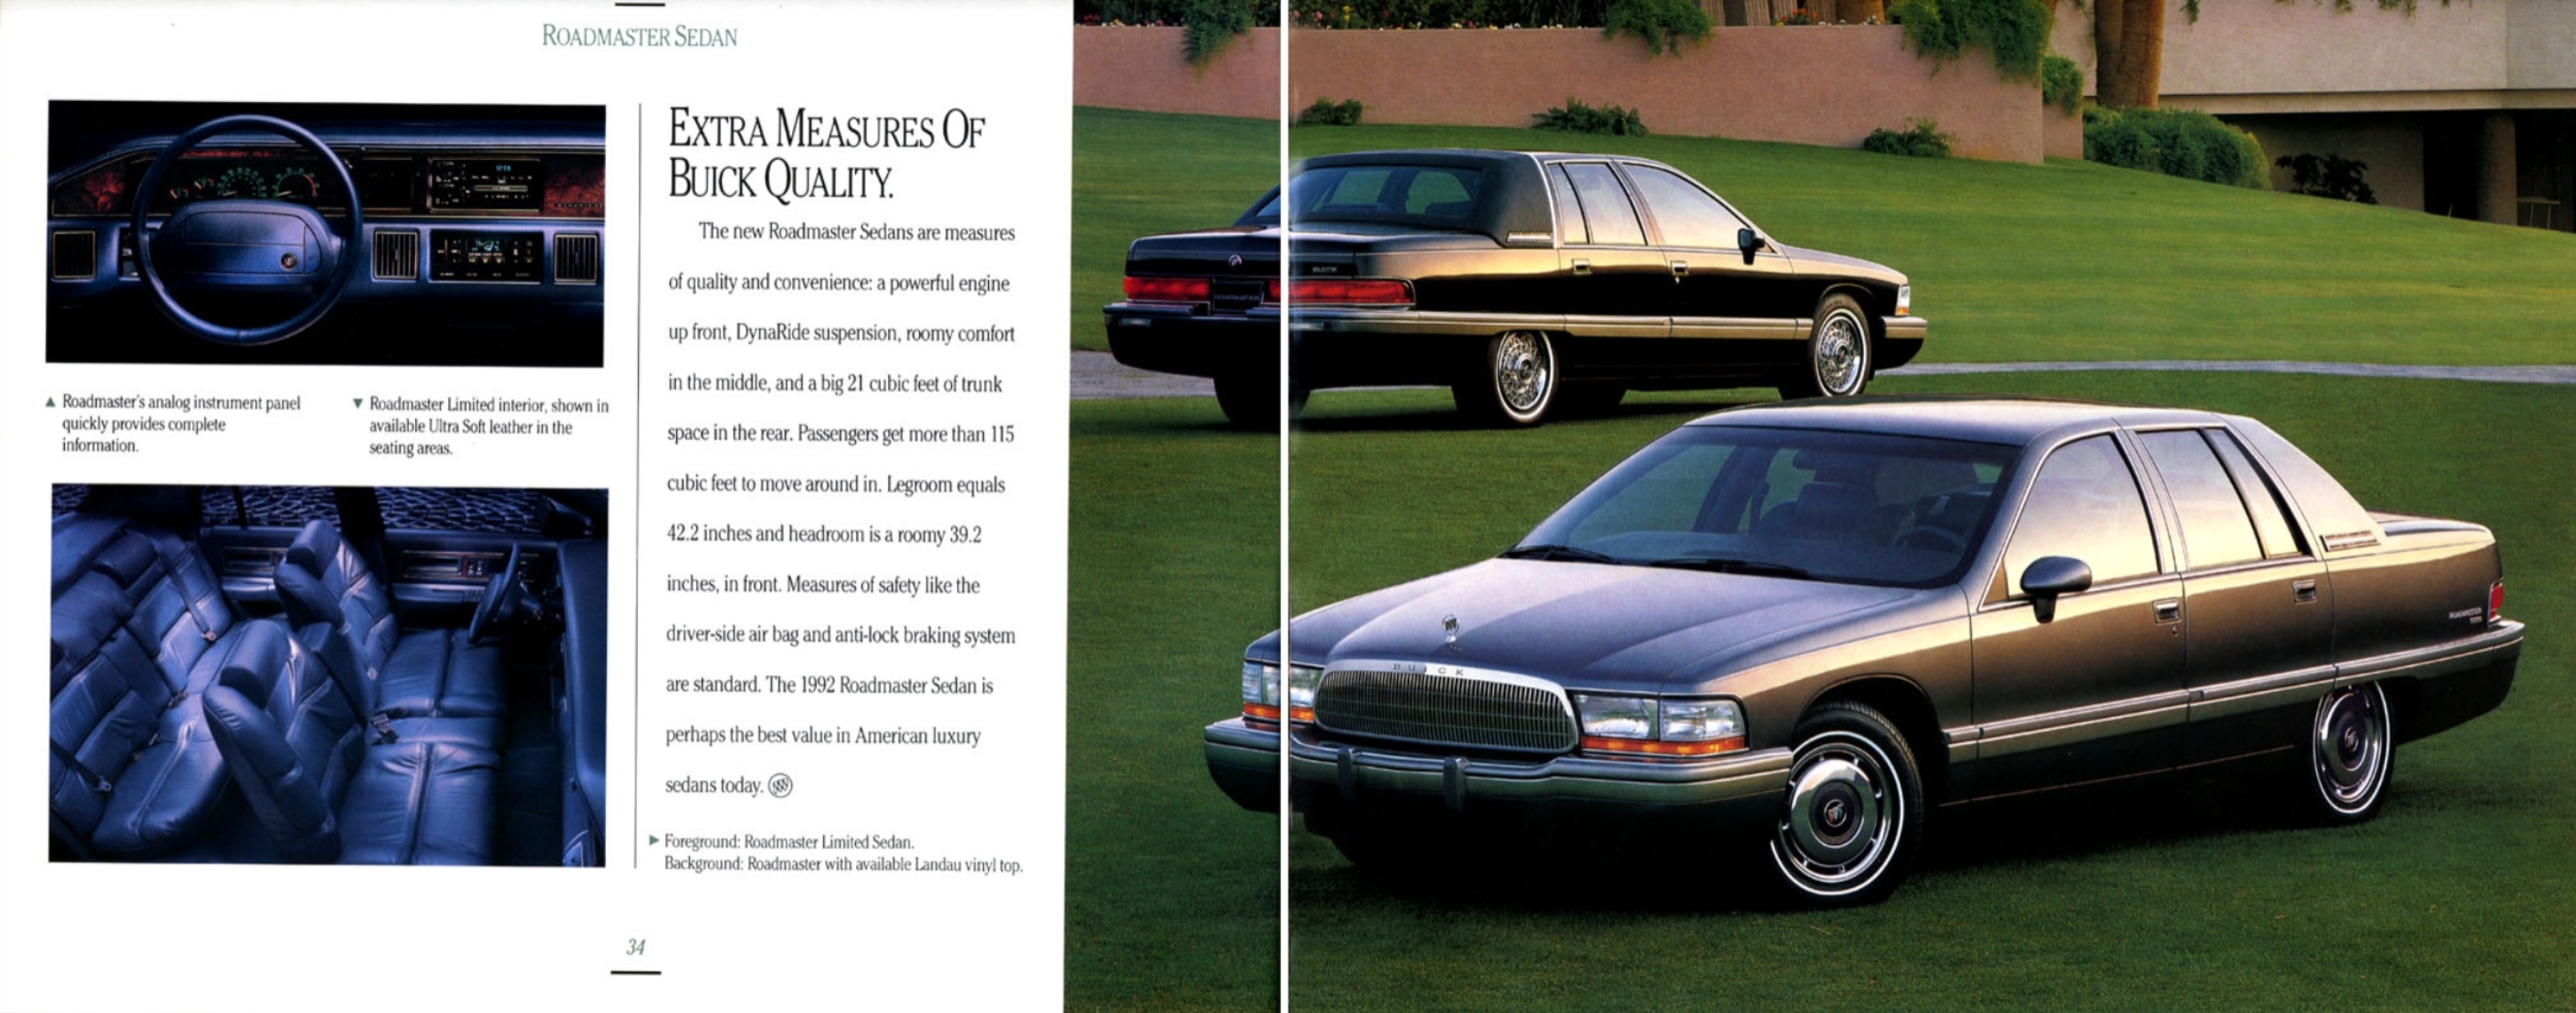 1992 Buick Full Line-34-35